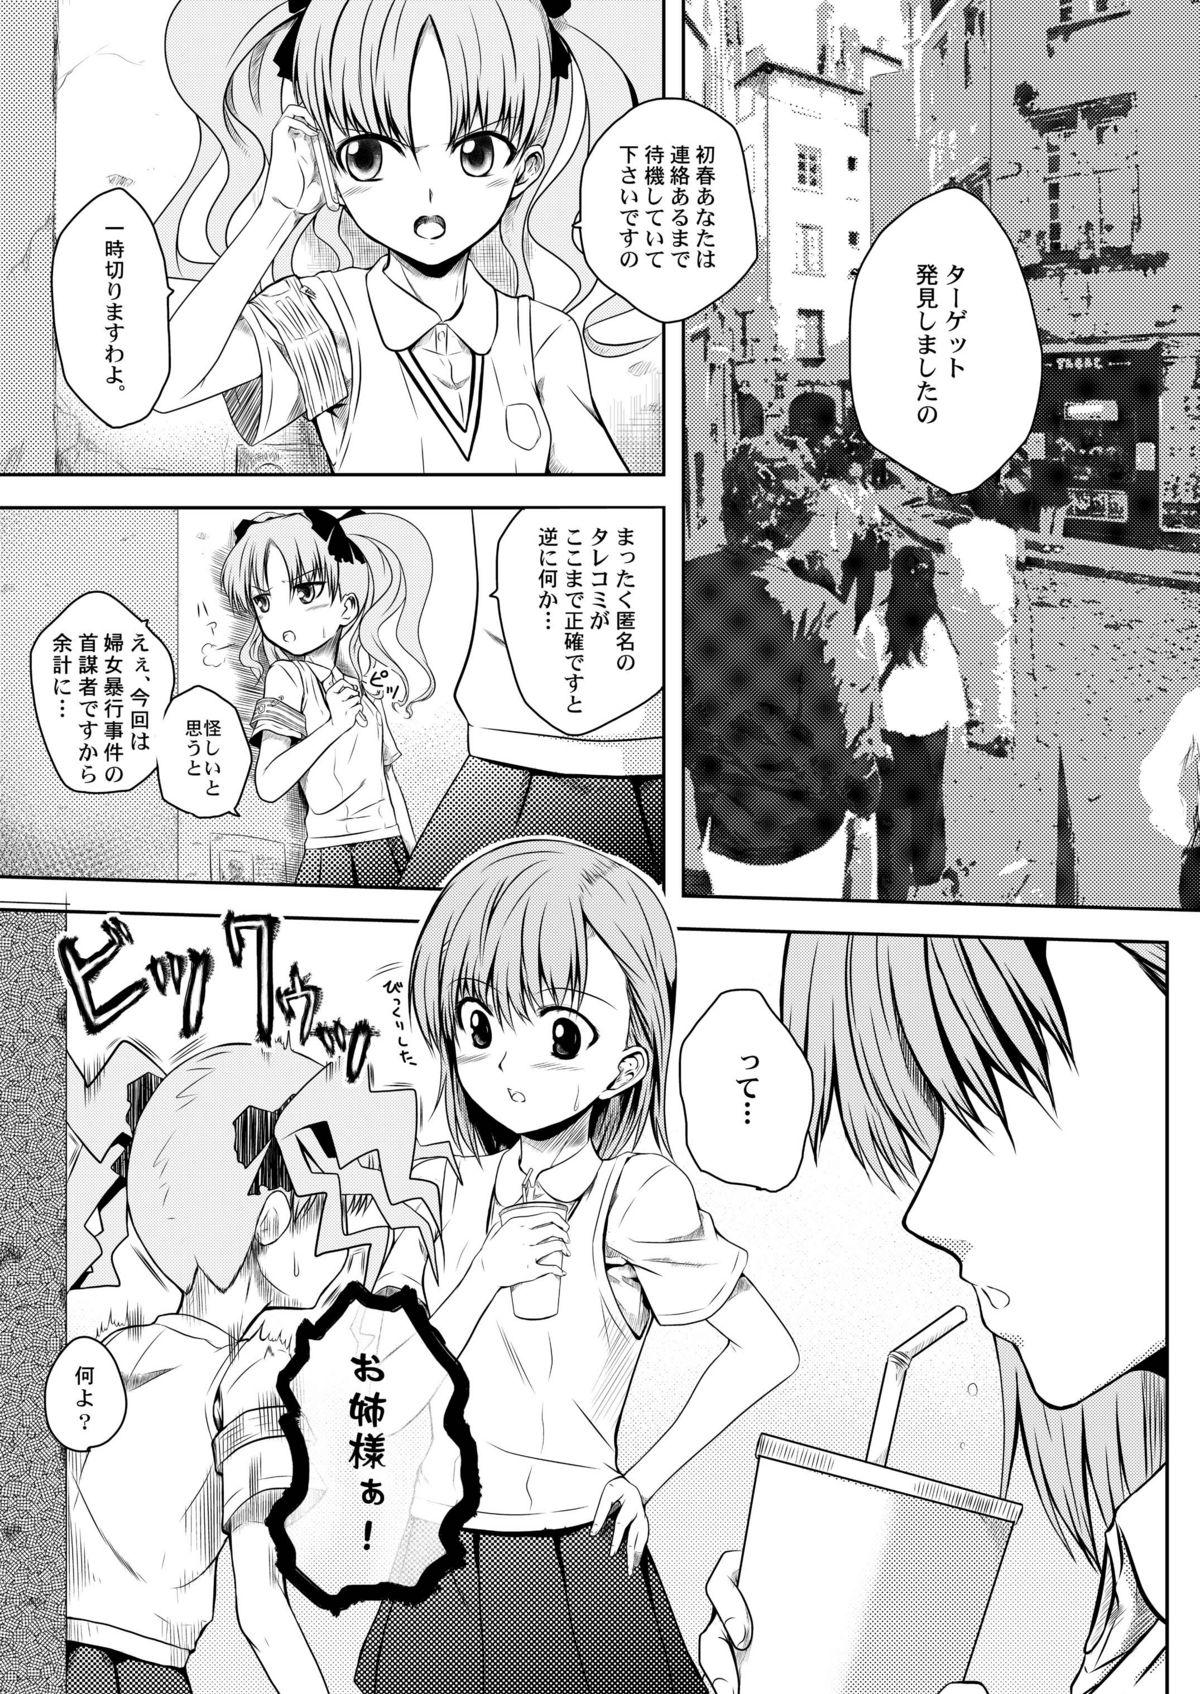 Lima Toaru Tokumei Kibou ni Goyoujin - Toaru kagaku no railgun Threesome - Page 4